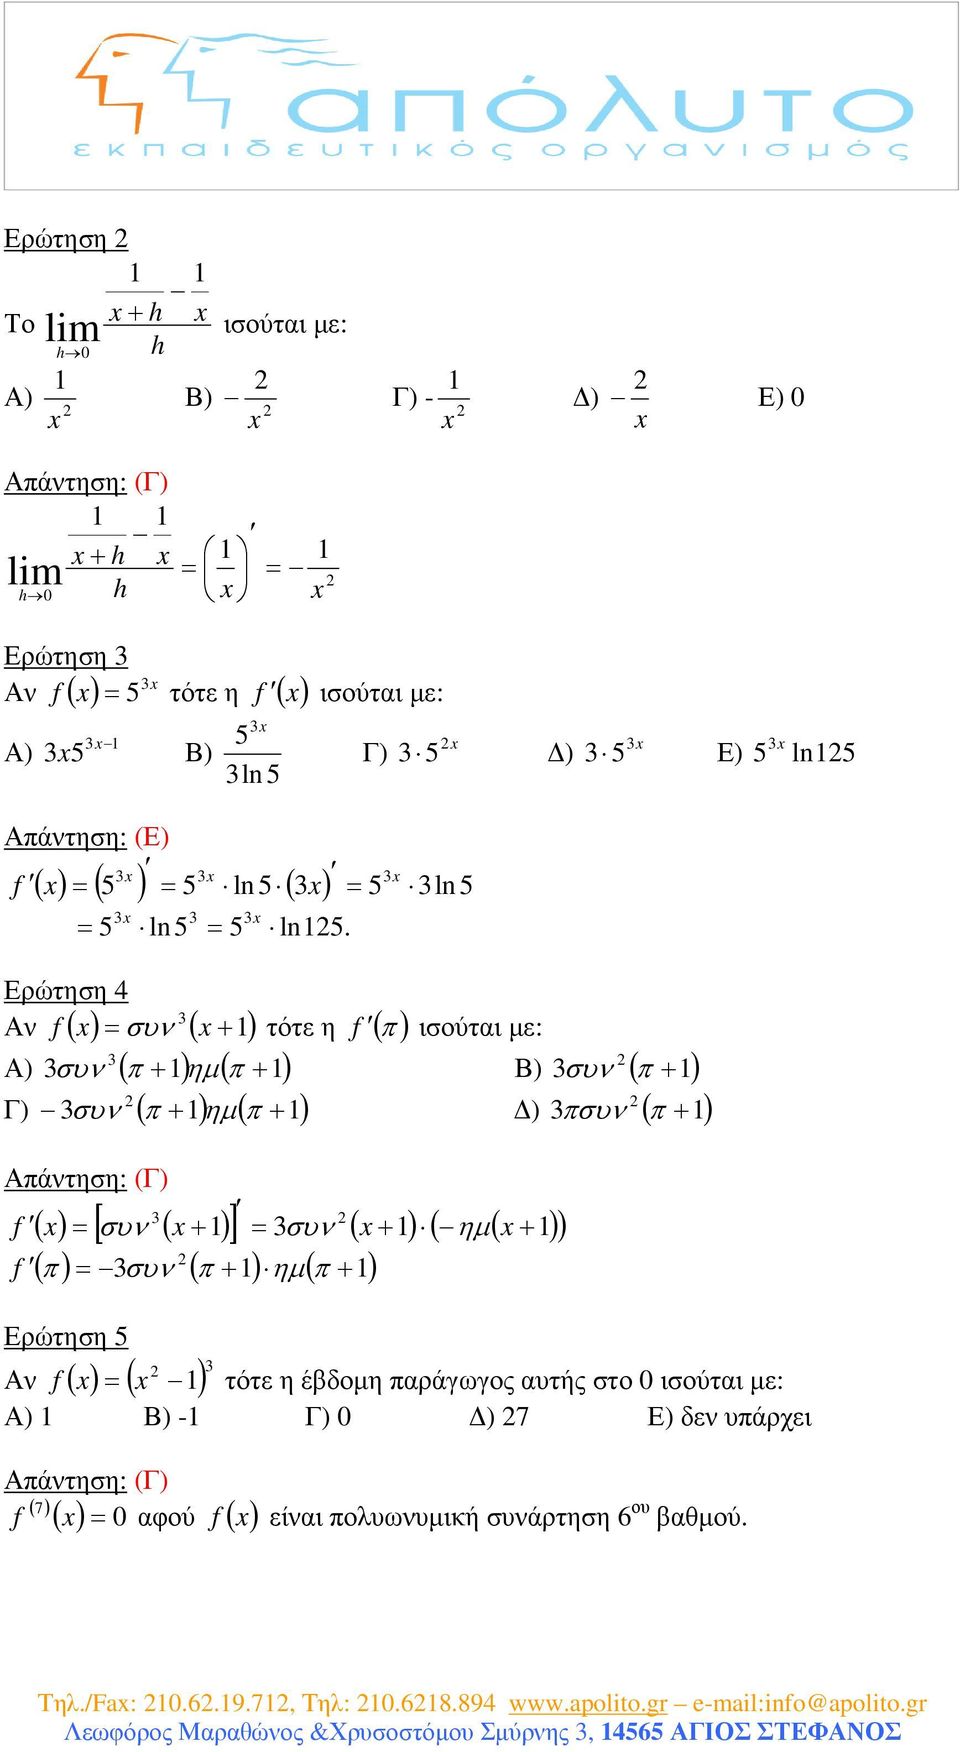 Αν συν τότε η ( π) ισούτι µε: Α) συν ( π + ) ηµ ( π + ) Β) συν ( π + ) Γ) συν ( π + ) ηµ ( π + ) ) πσυν ( π + ) Απάντηση: (Γ) [ ] ( + ) ( + ) συν ( + ) συν ( π)